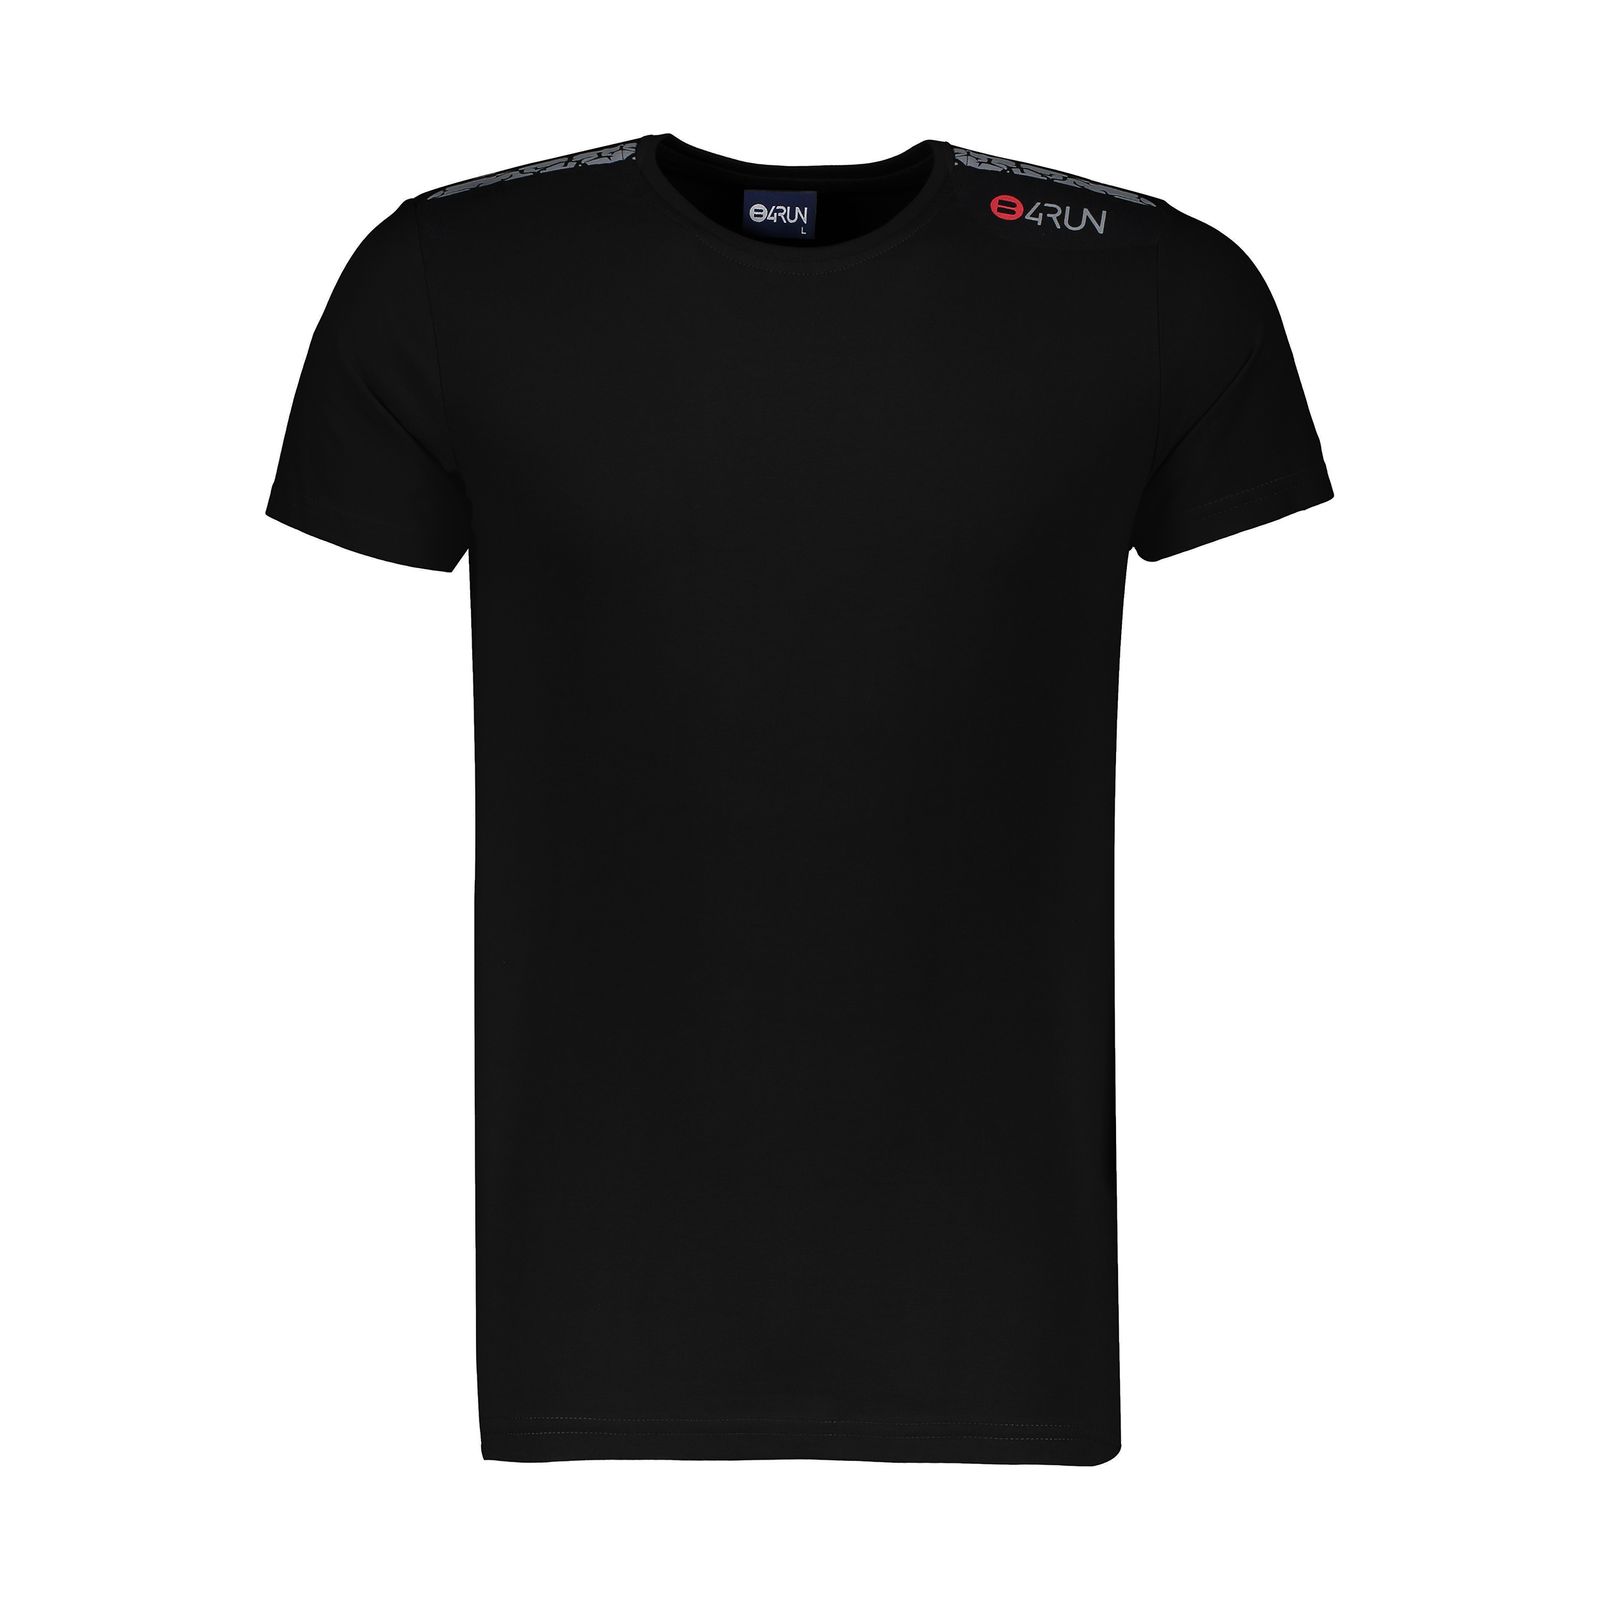 تی شرت ورزشی مردانه بی فور ران مدل 980318-99 - مشکی - 1